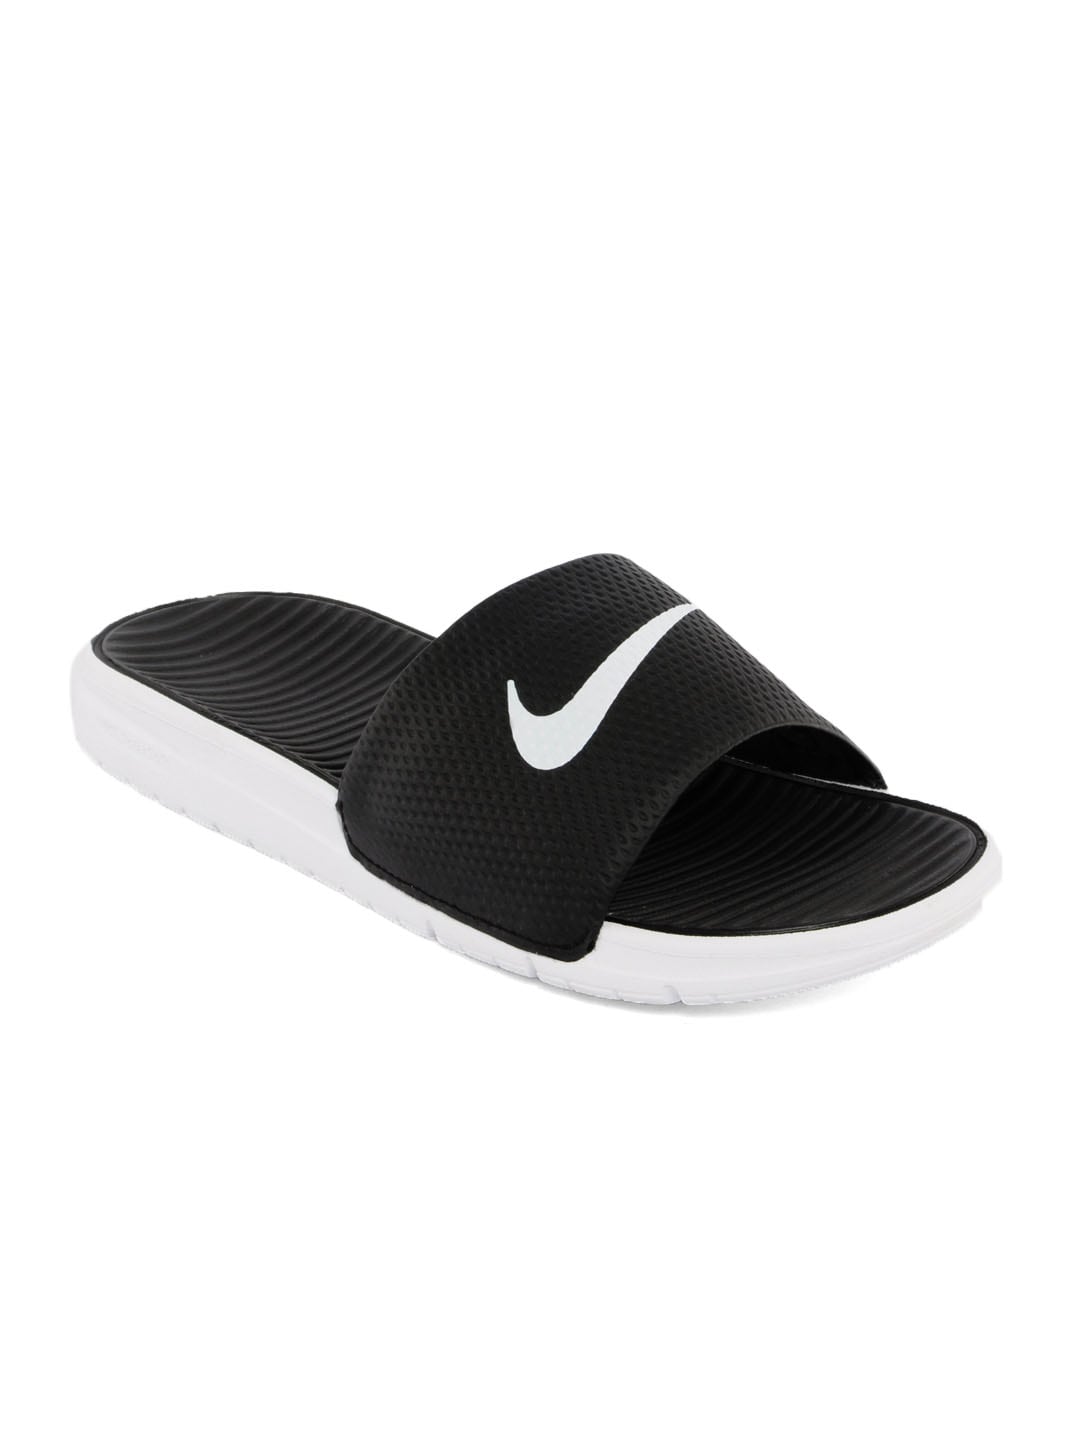 Nike Men Bennasi Solarsift White Sandals